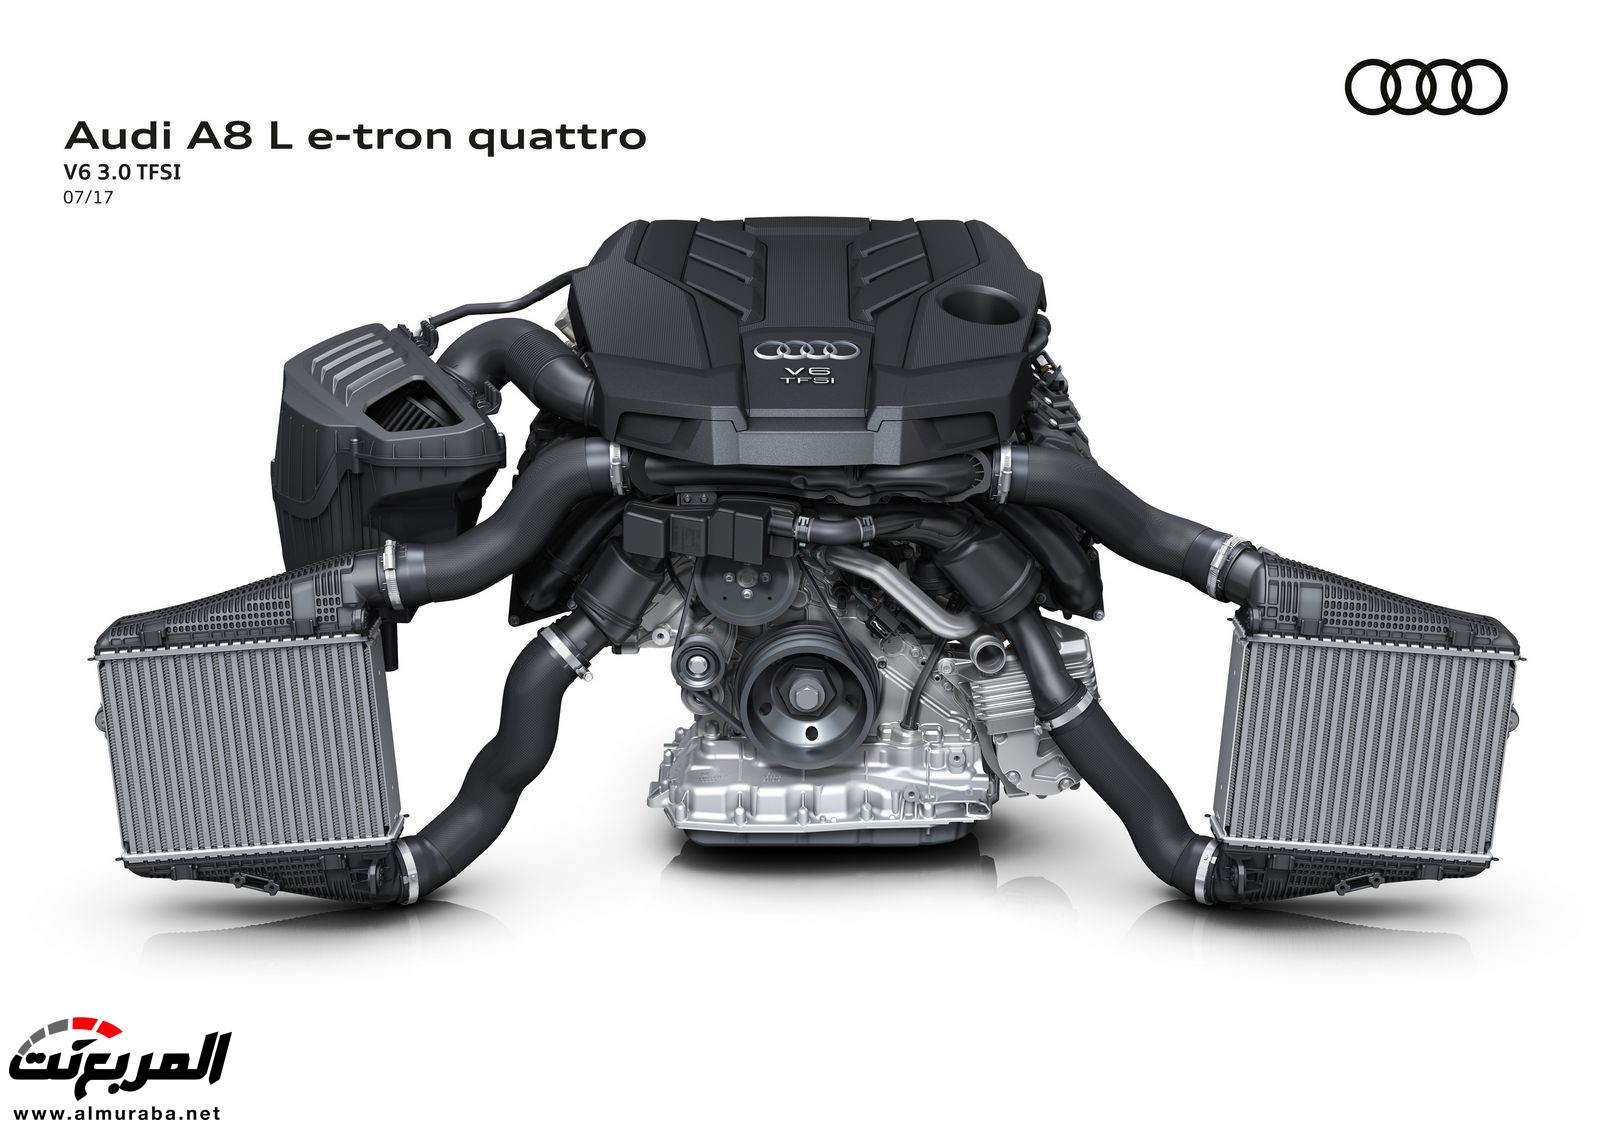 أودي A8 2018 الجديدة كلياً تكشف نفسها بتصميم وتقنيات متطورة "معلومات + 100 صورة" Audi A8 106